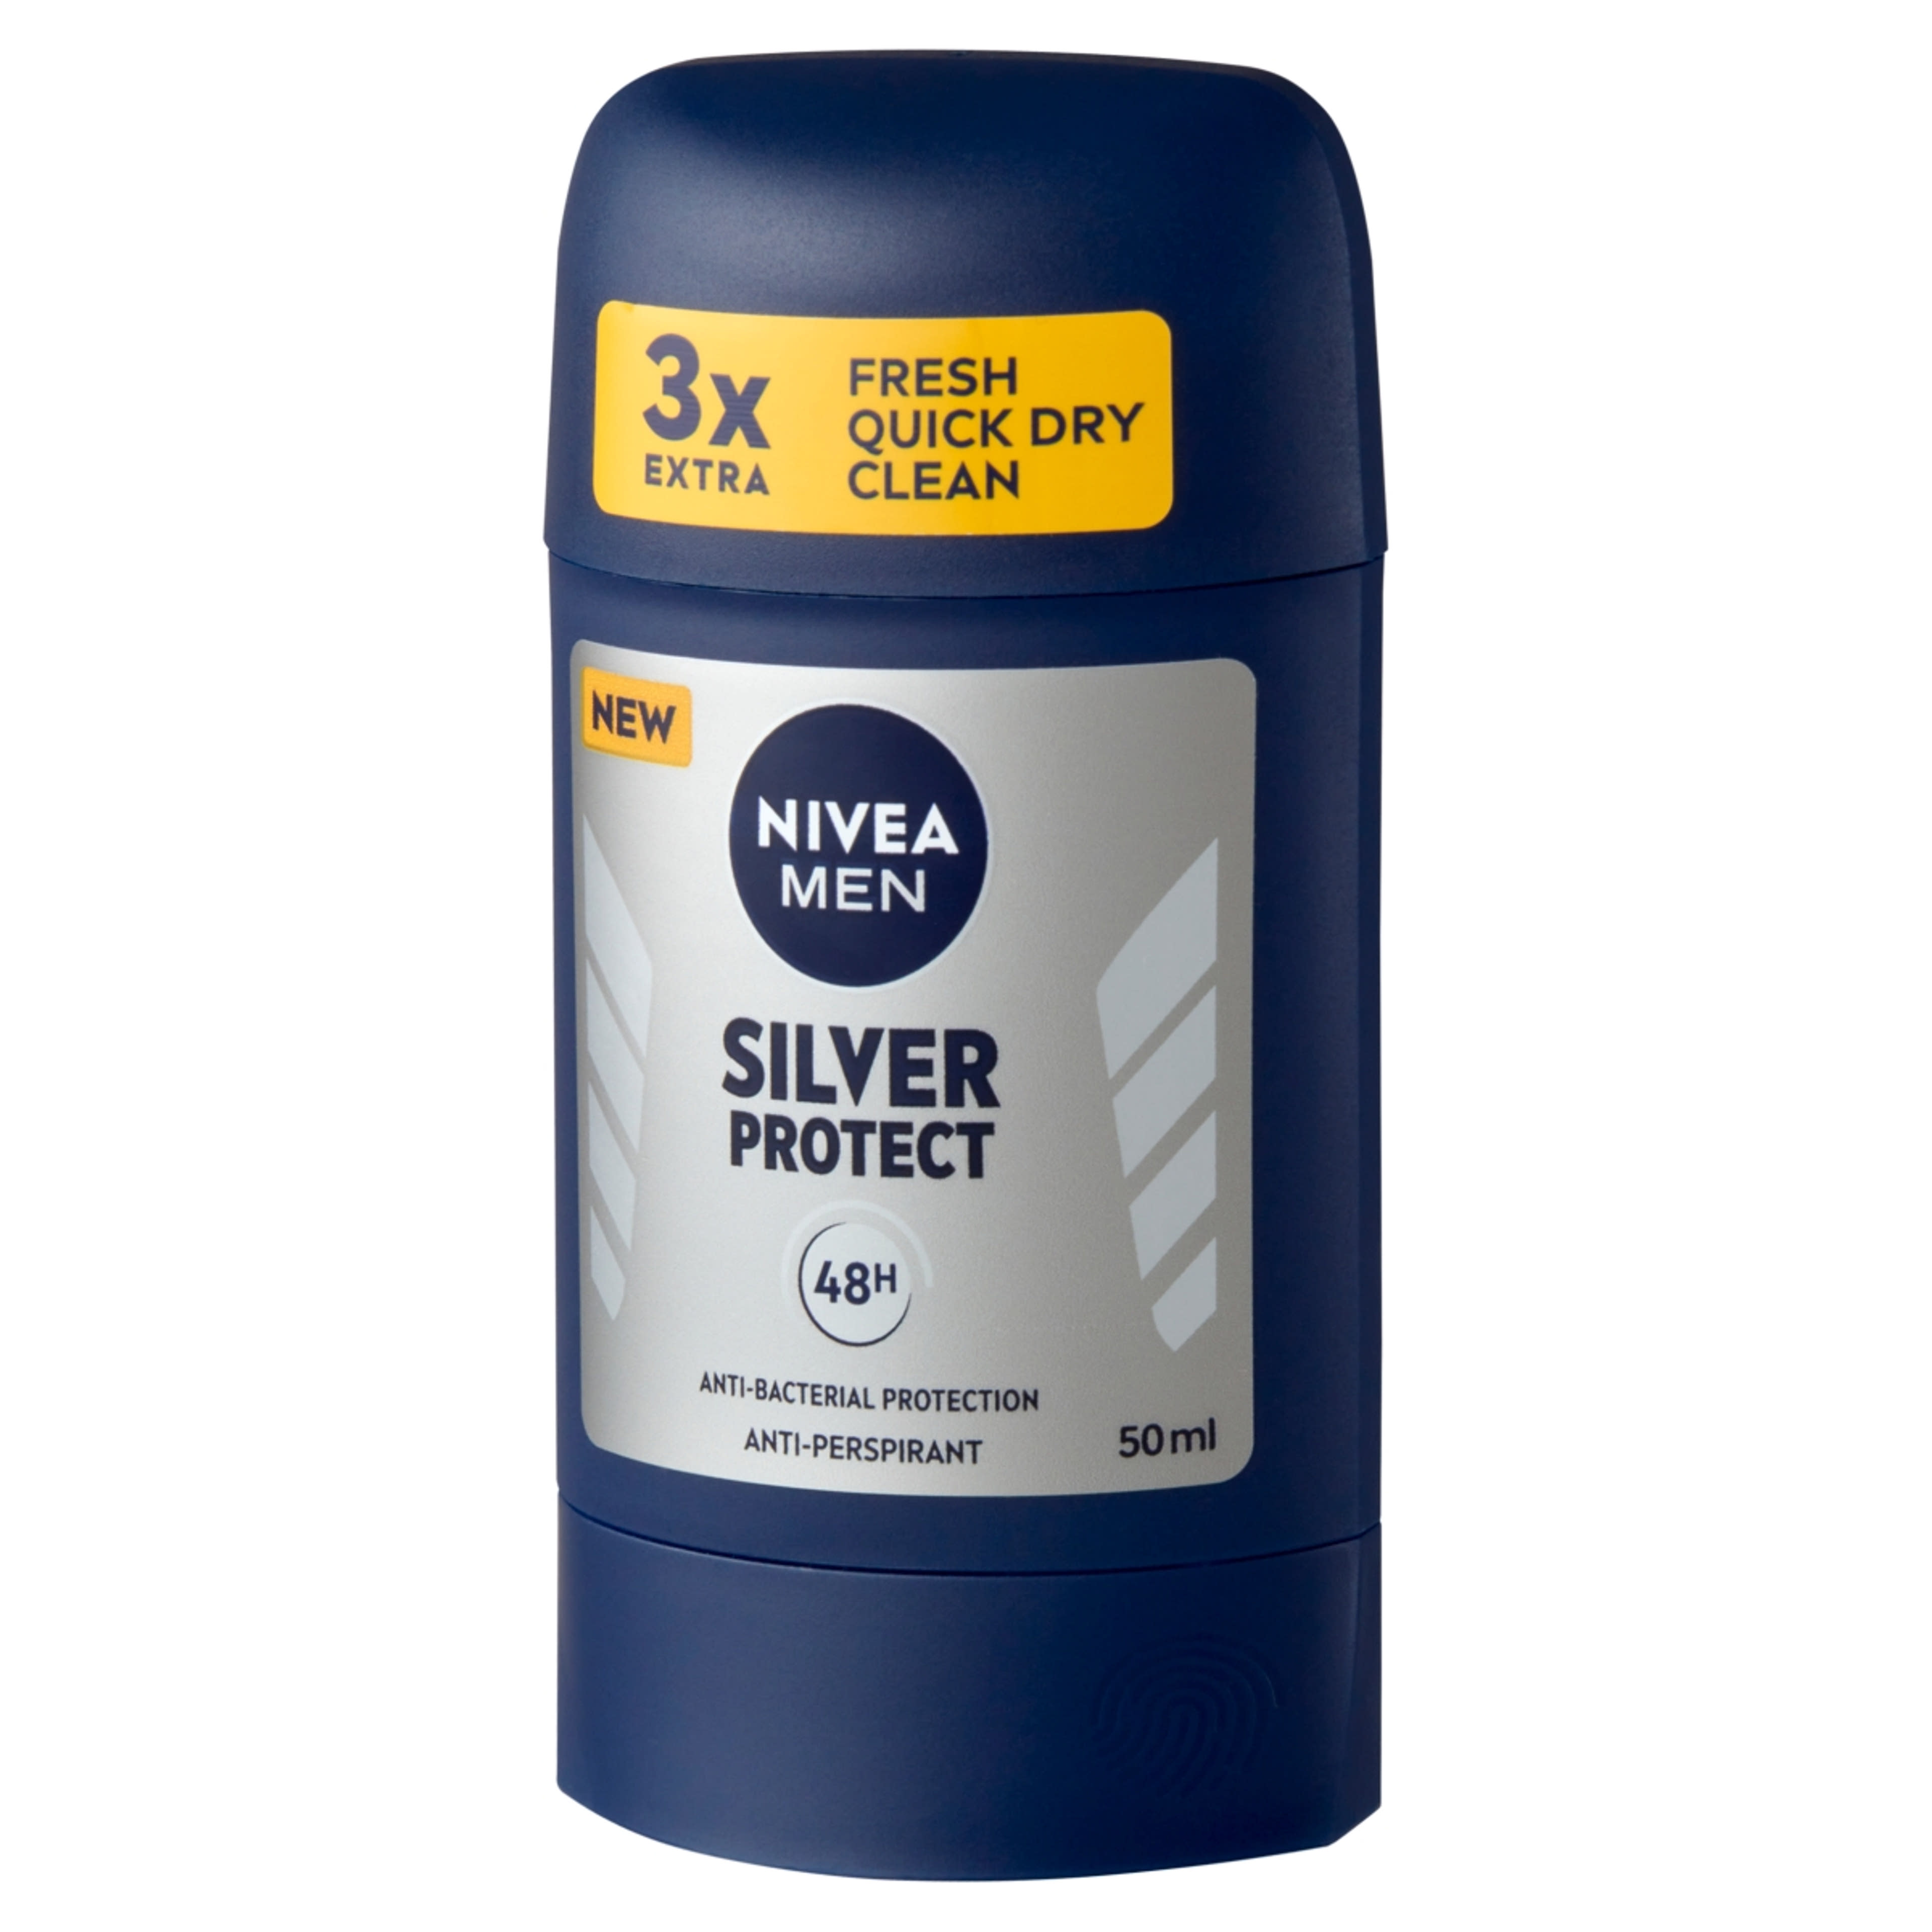 Nivea Men Silver Protect deo stift - 50 ml-3